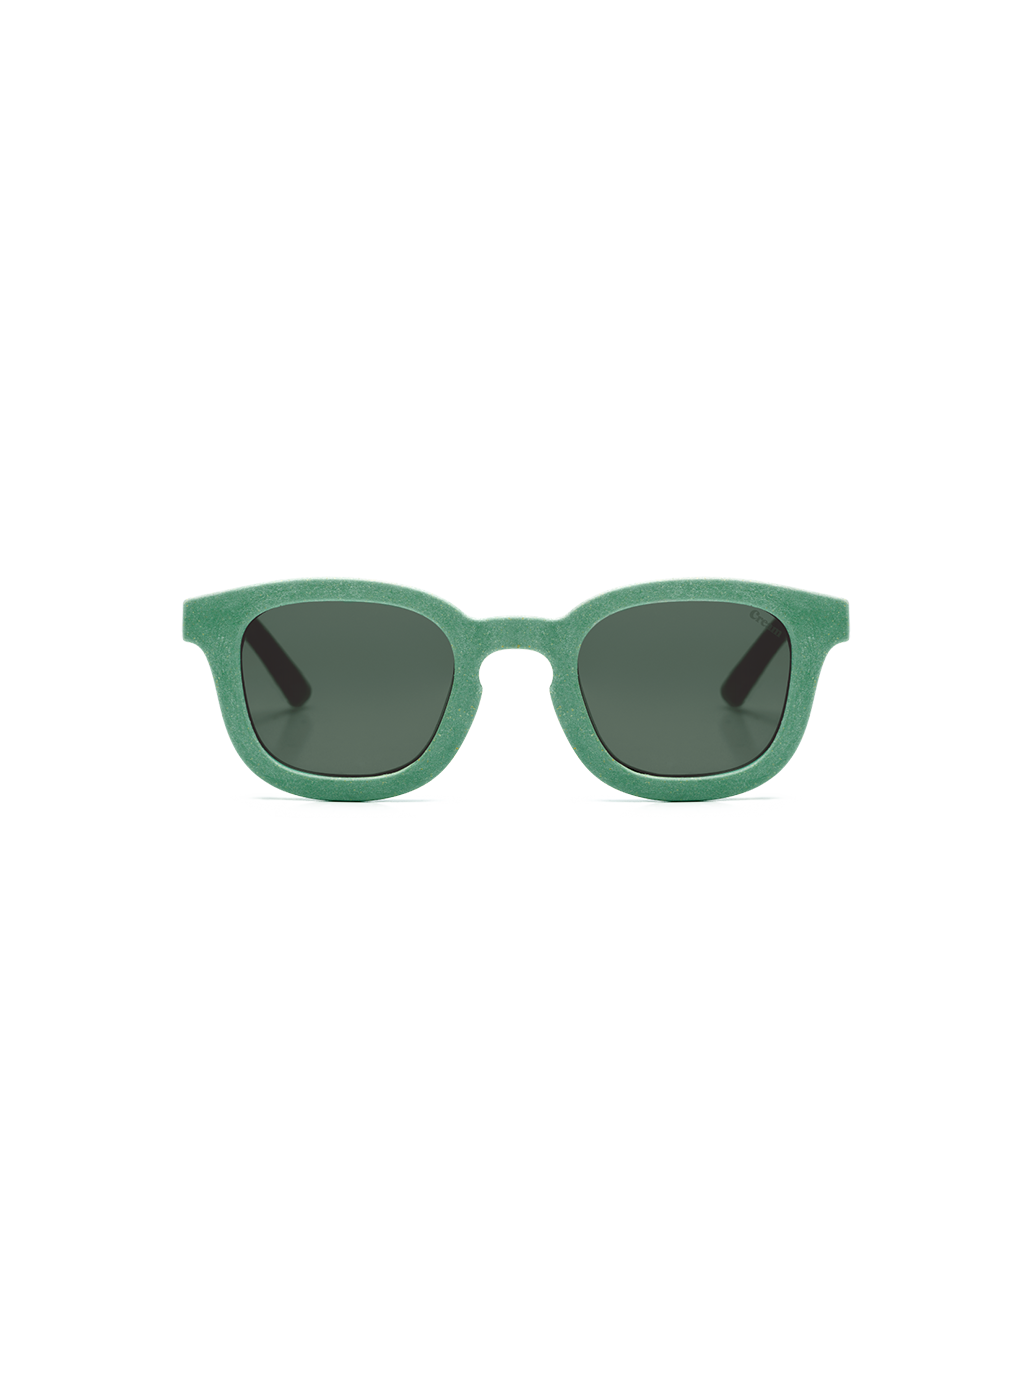 Junior sunglasses 02 GL x Cream